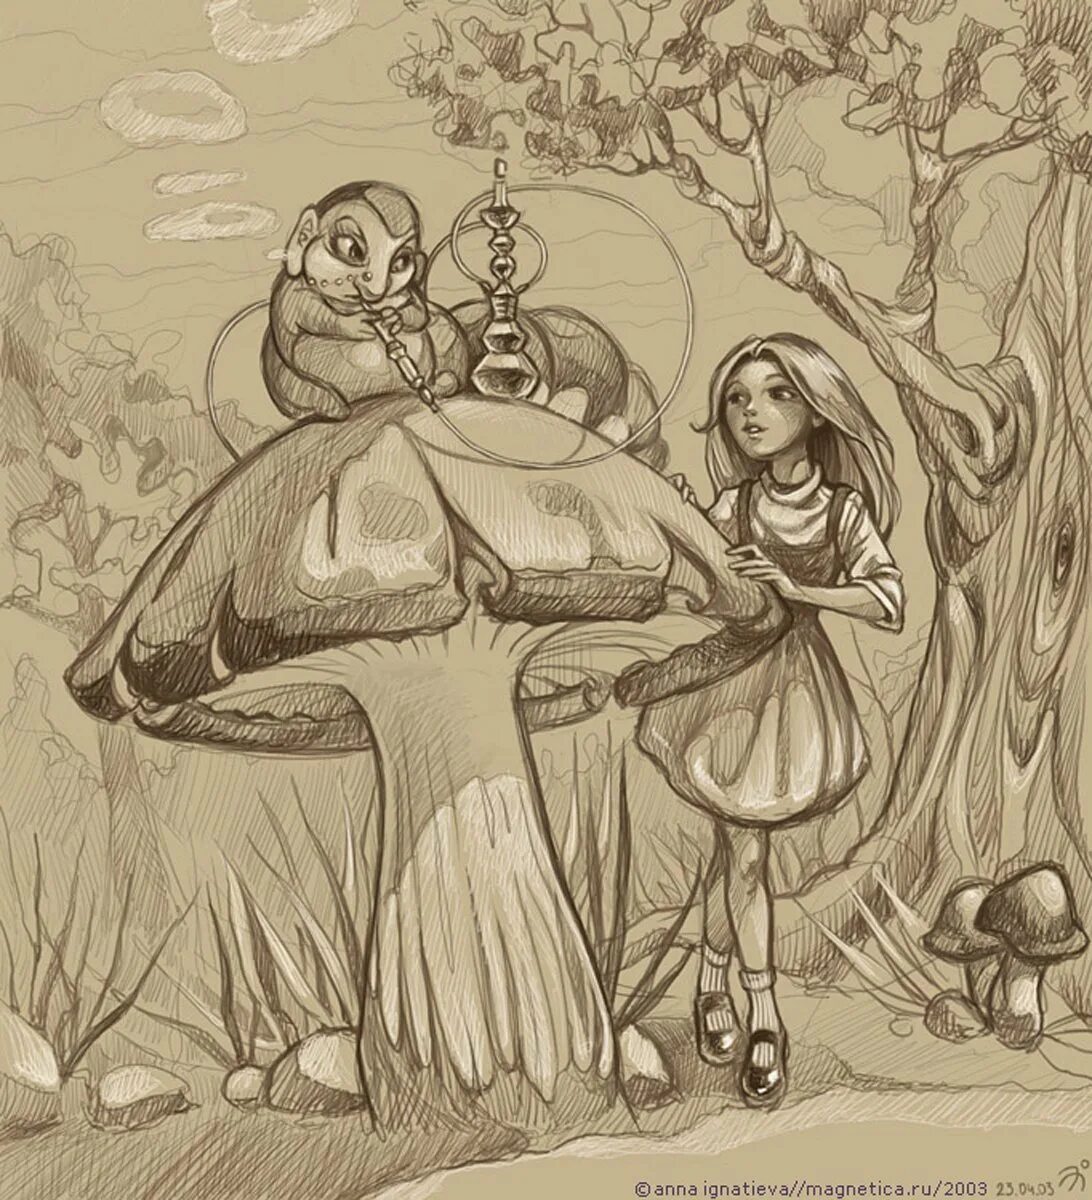 Ллюстрация к сказке "Алиса в стране чудес". Алиса в стране чудес рисунок. Иллюстрация к сказке Алиса в стране чудес рисунки. Рисунок к сказке Алиса в стране чудес. Рисунок про алису